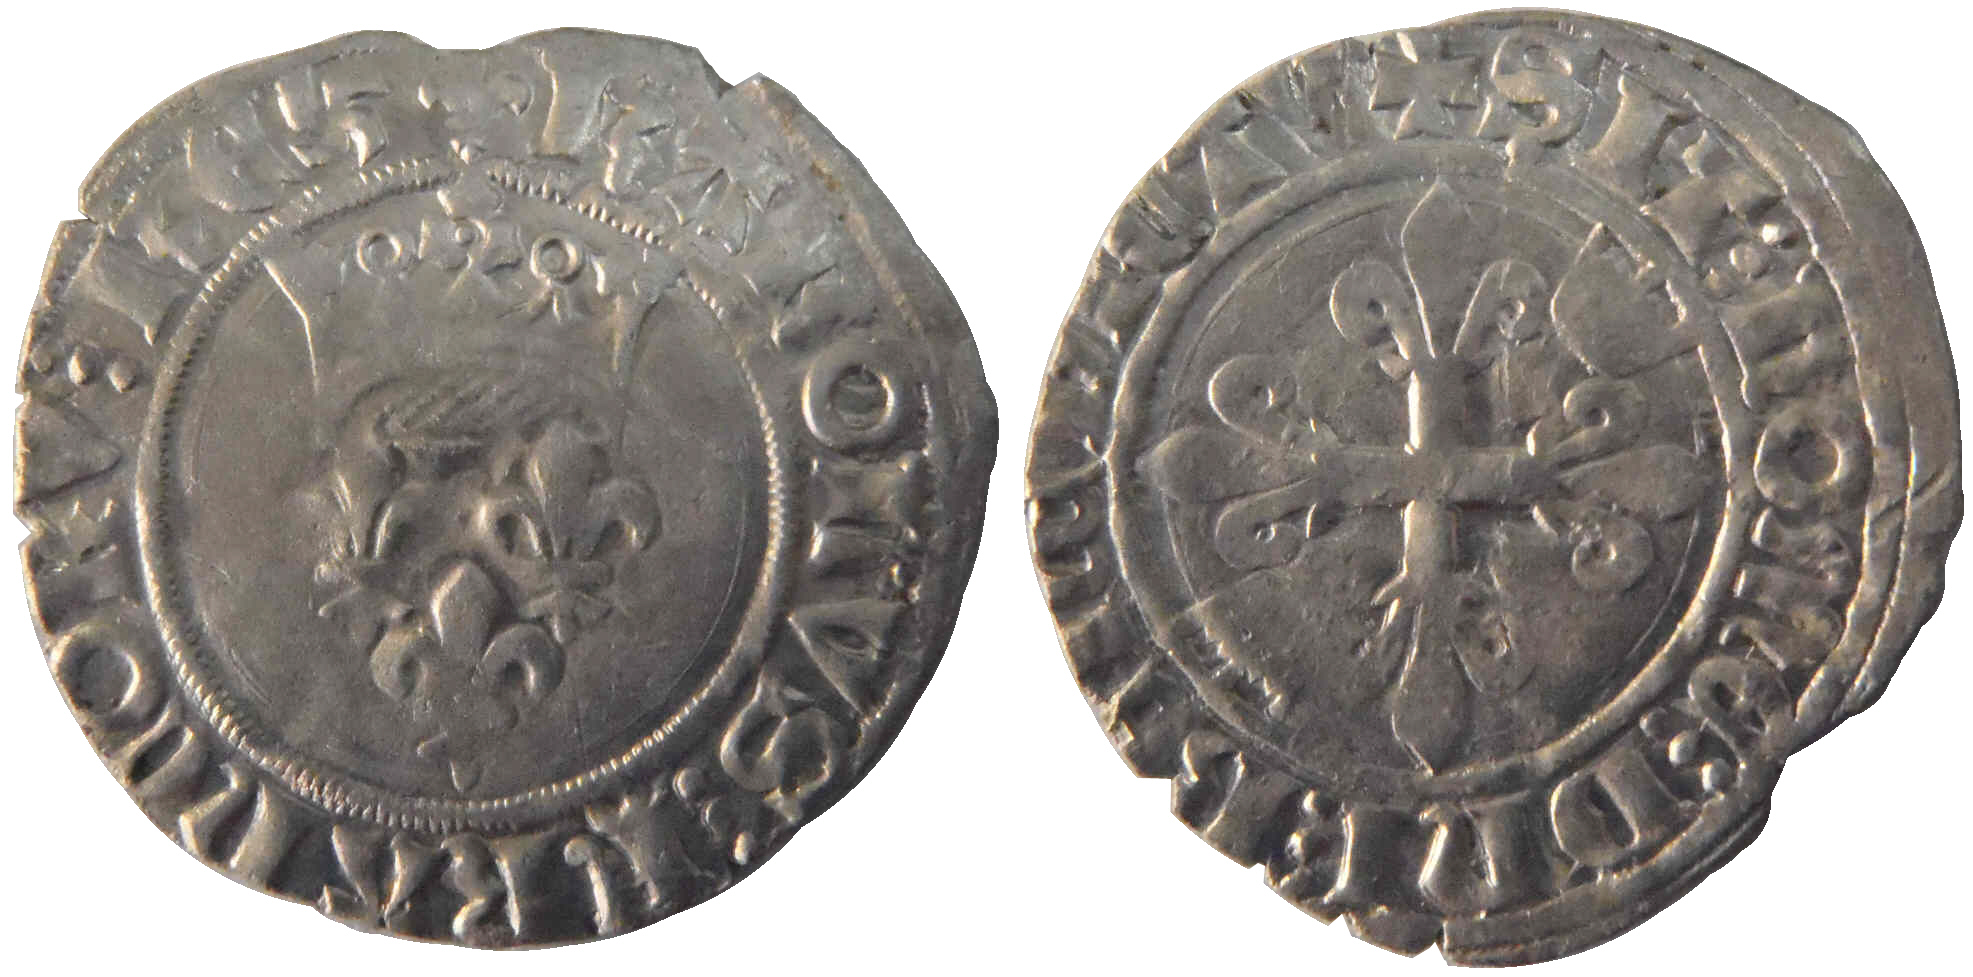 Des gros dits «florettes» ducaux inédits frappés au nom de Charles VI à Chalon-sur-Saône en 1419 – partie 4